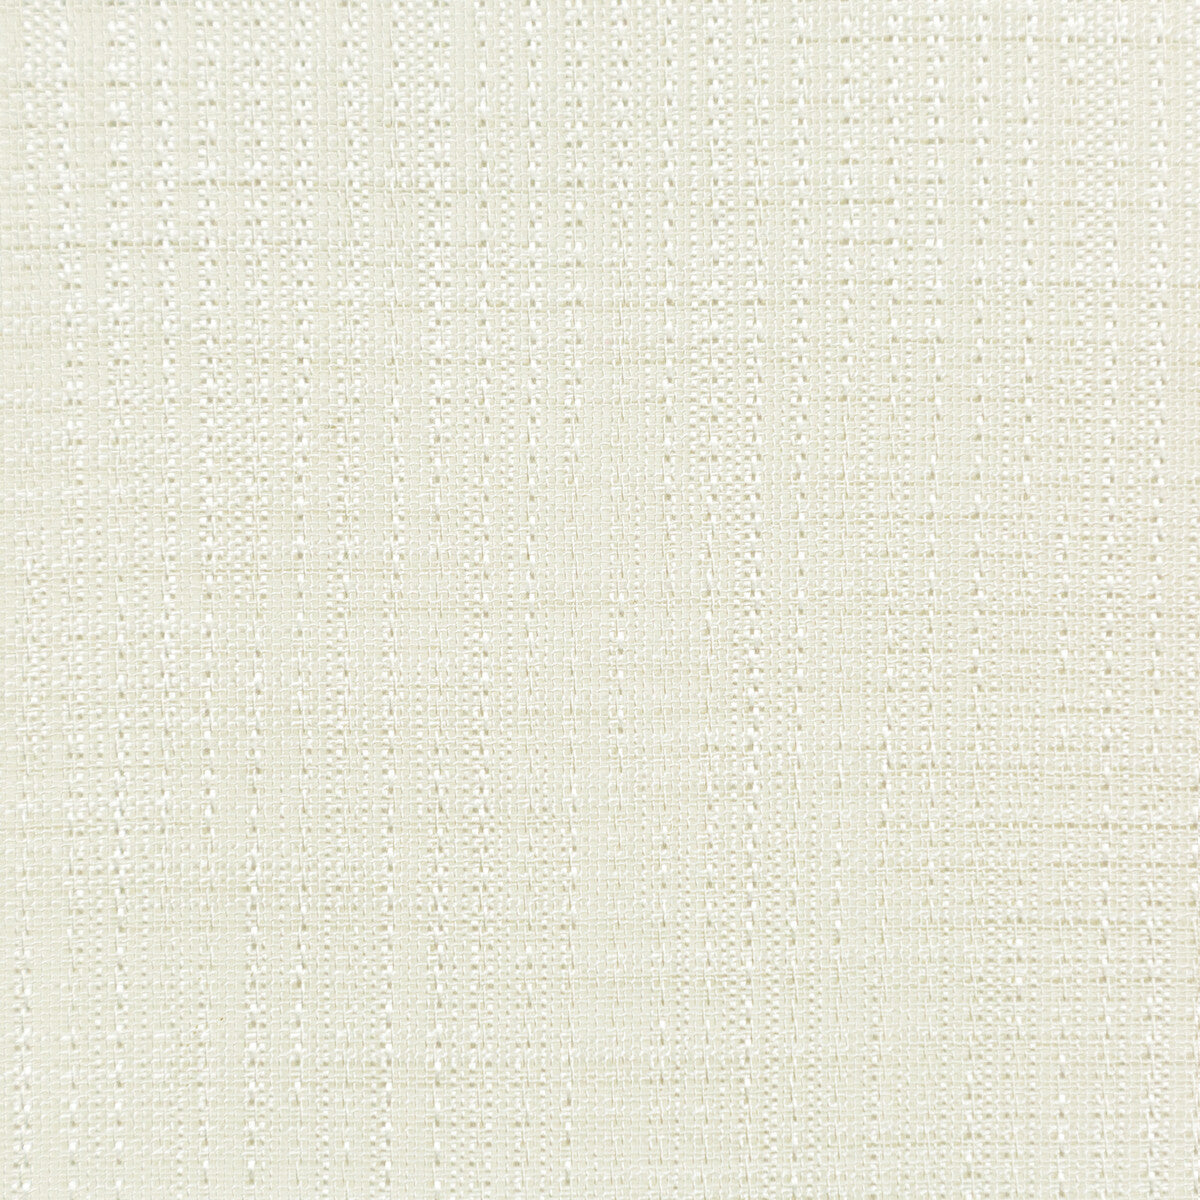 Kravet Basics fabric in 4760-1 color - pattern 4760.1.0 - by Kravet Basics